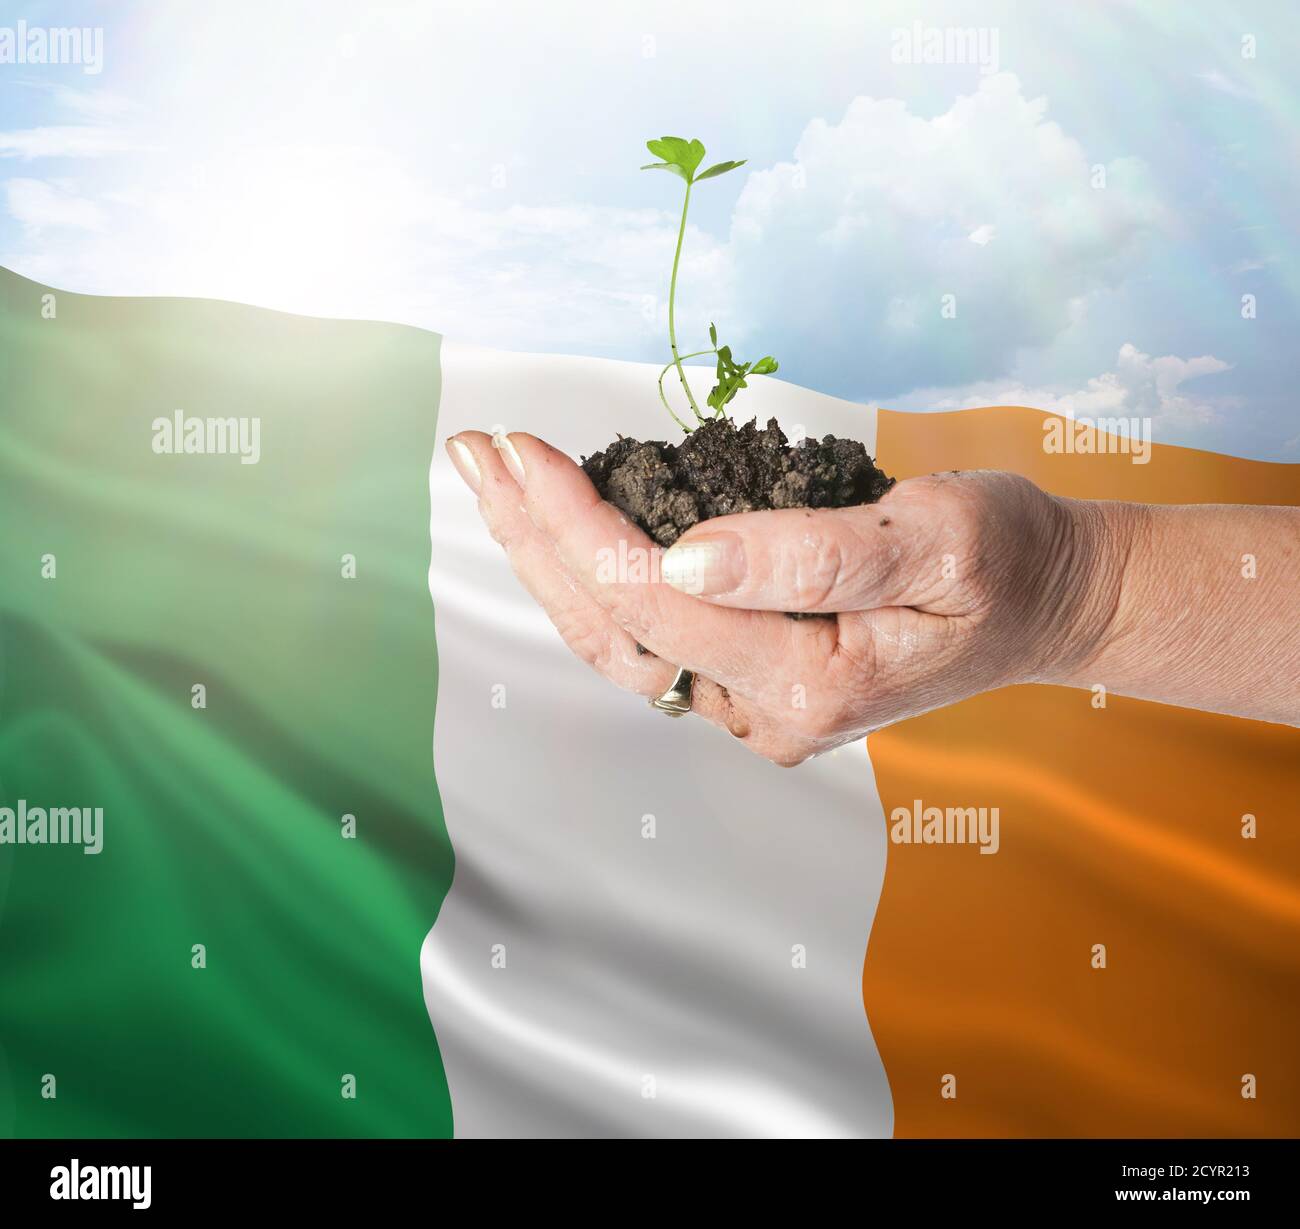 El crecimiento de Irlanda y el nuevo comienzo. Concepto de energía renovable verde y ecología. Mano sosteniendo planta joven. Foto de stock